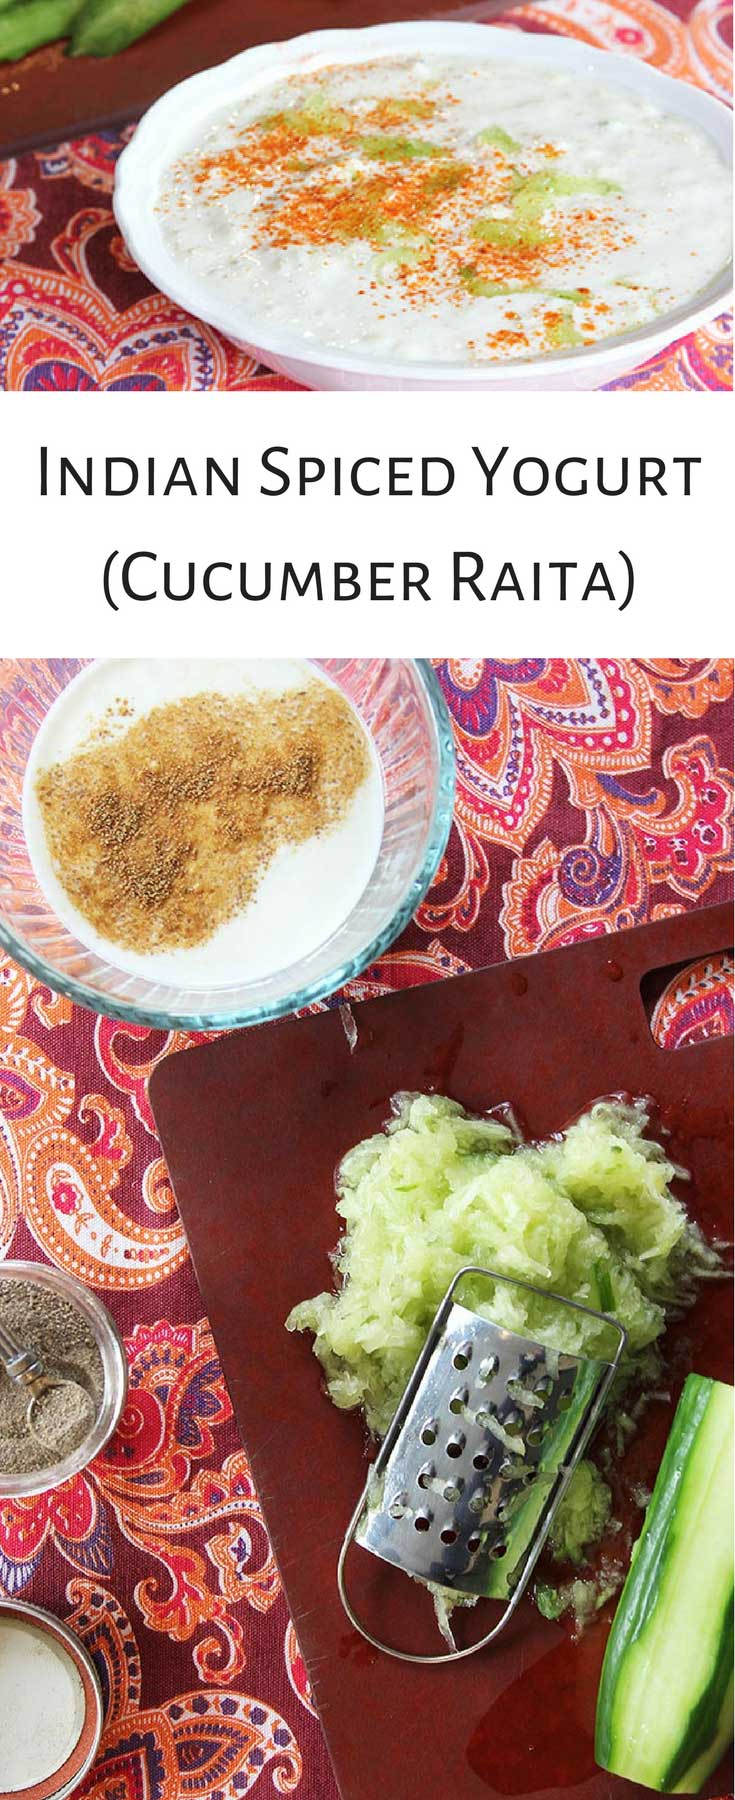 Savory Yogurt For Dinner? Try Cucumber Raita